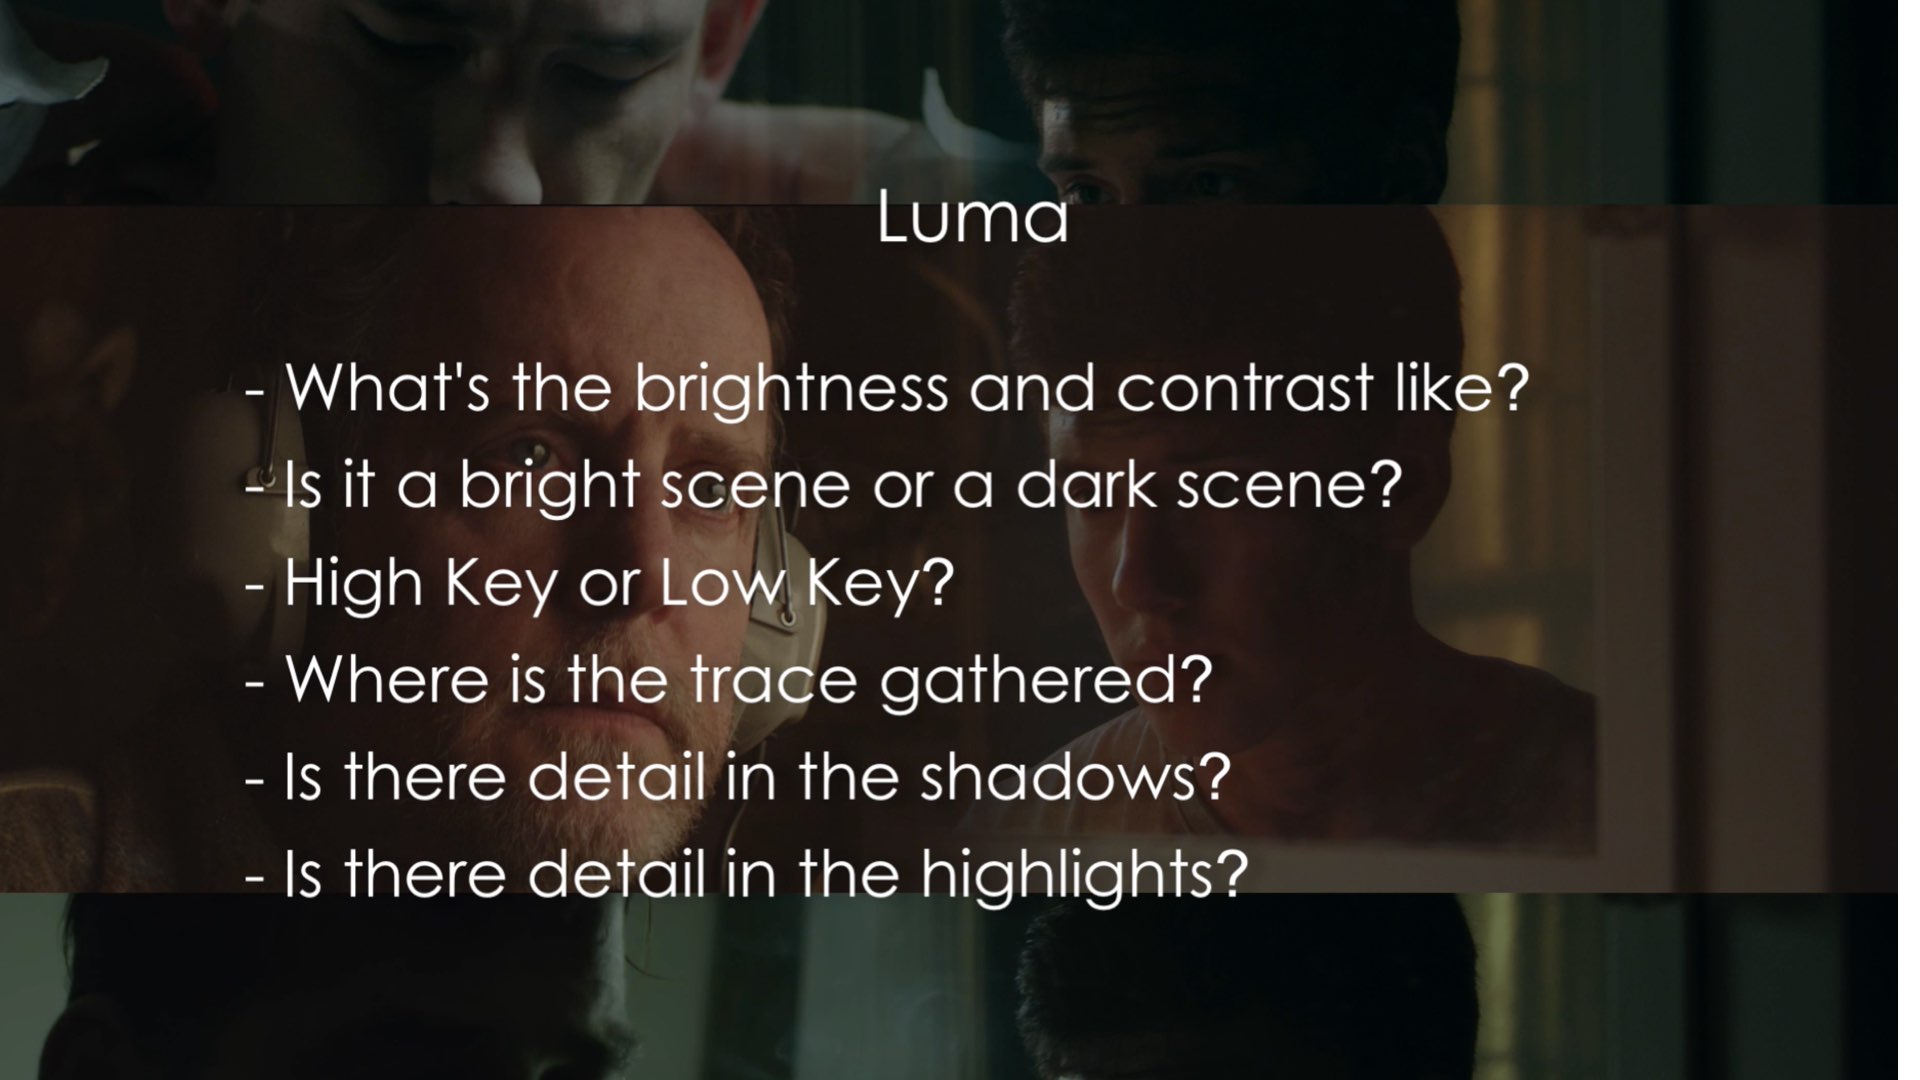 Analyzing Luma